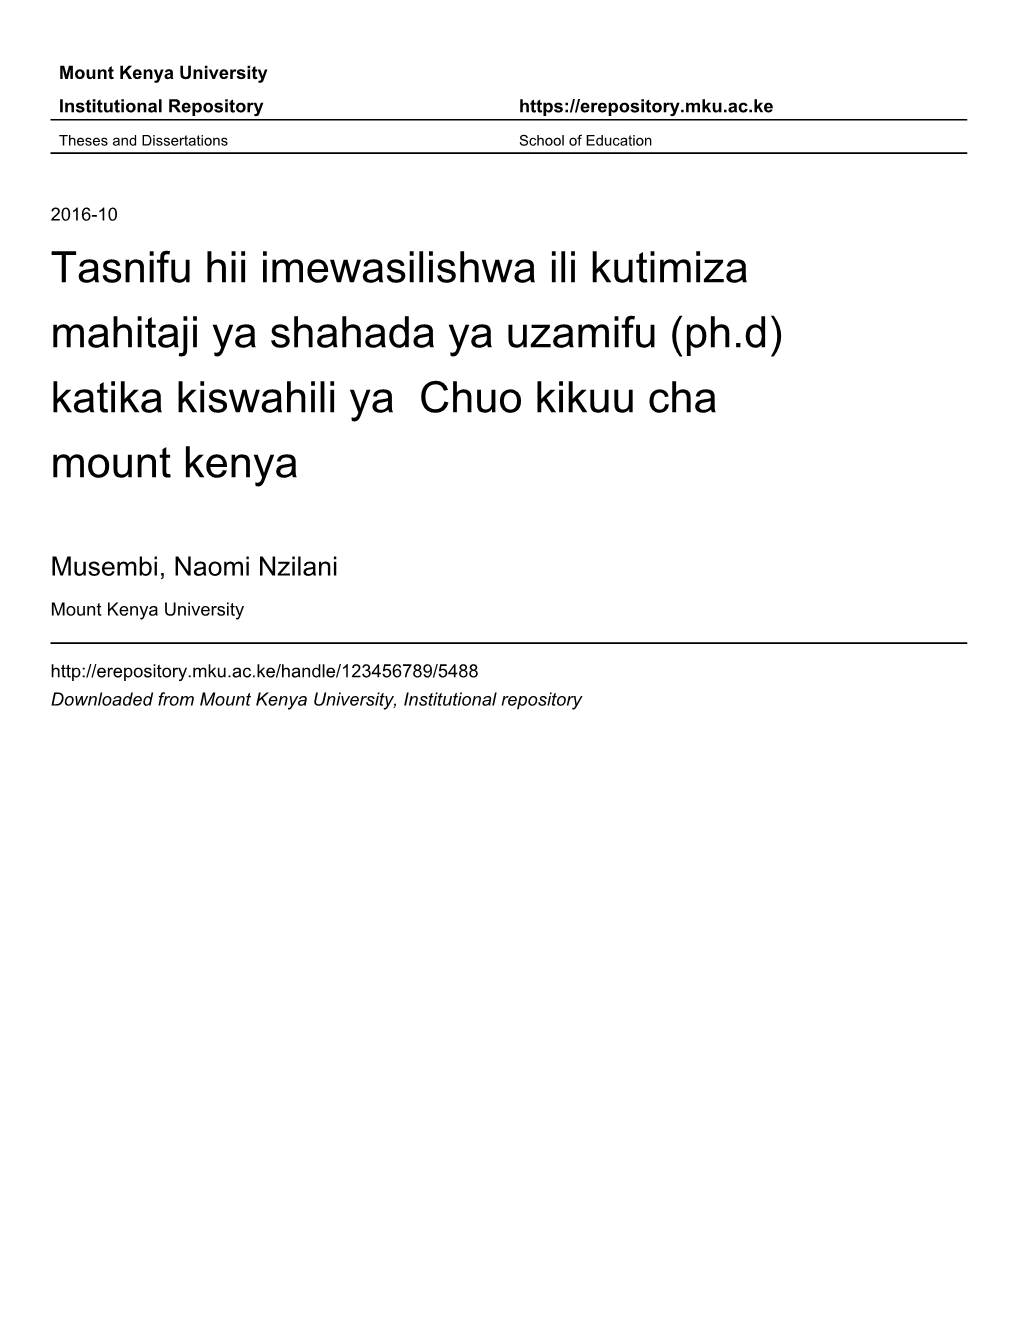 Tasnifu Hii Imewasilishwa Ili Kutimiza Mahitaji Ya Shahada Ya Uzamifu (Ph.D) Katika Kiswahili Ya Chuo Kikuu Cha Mount Kenya